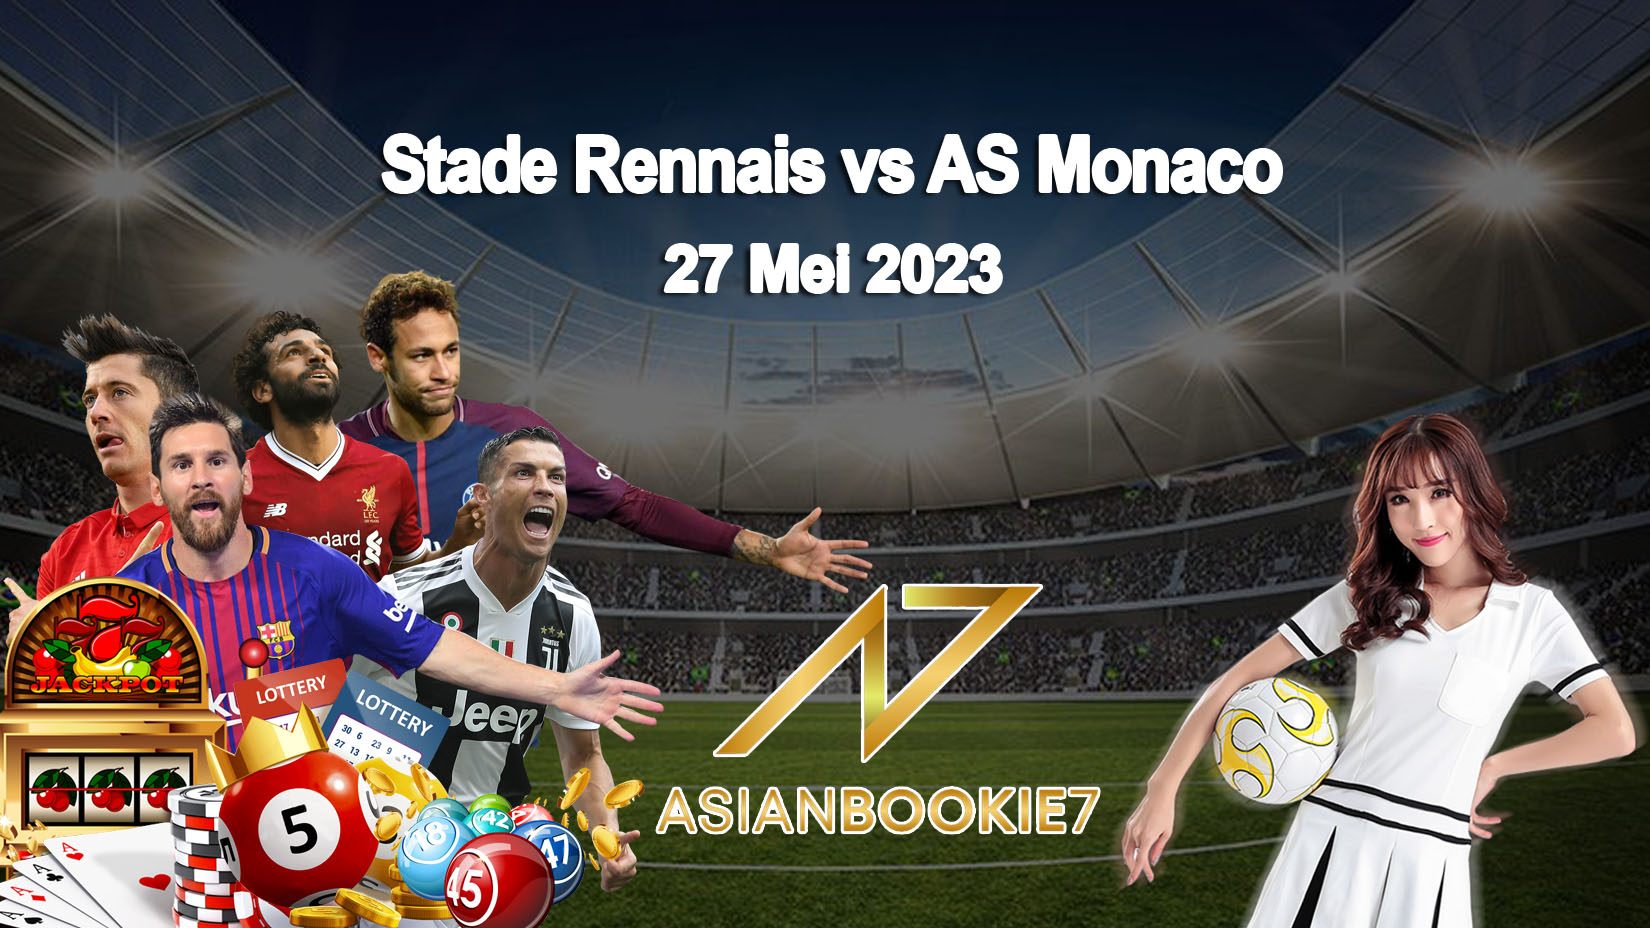 Prediksi Stade Rennais vs AS Monaco 27 Mei 2023